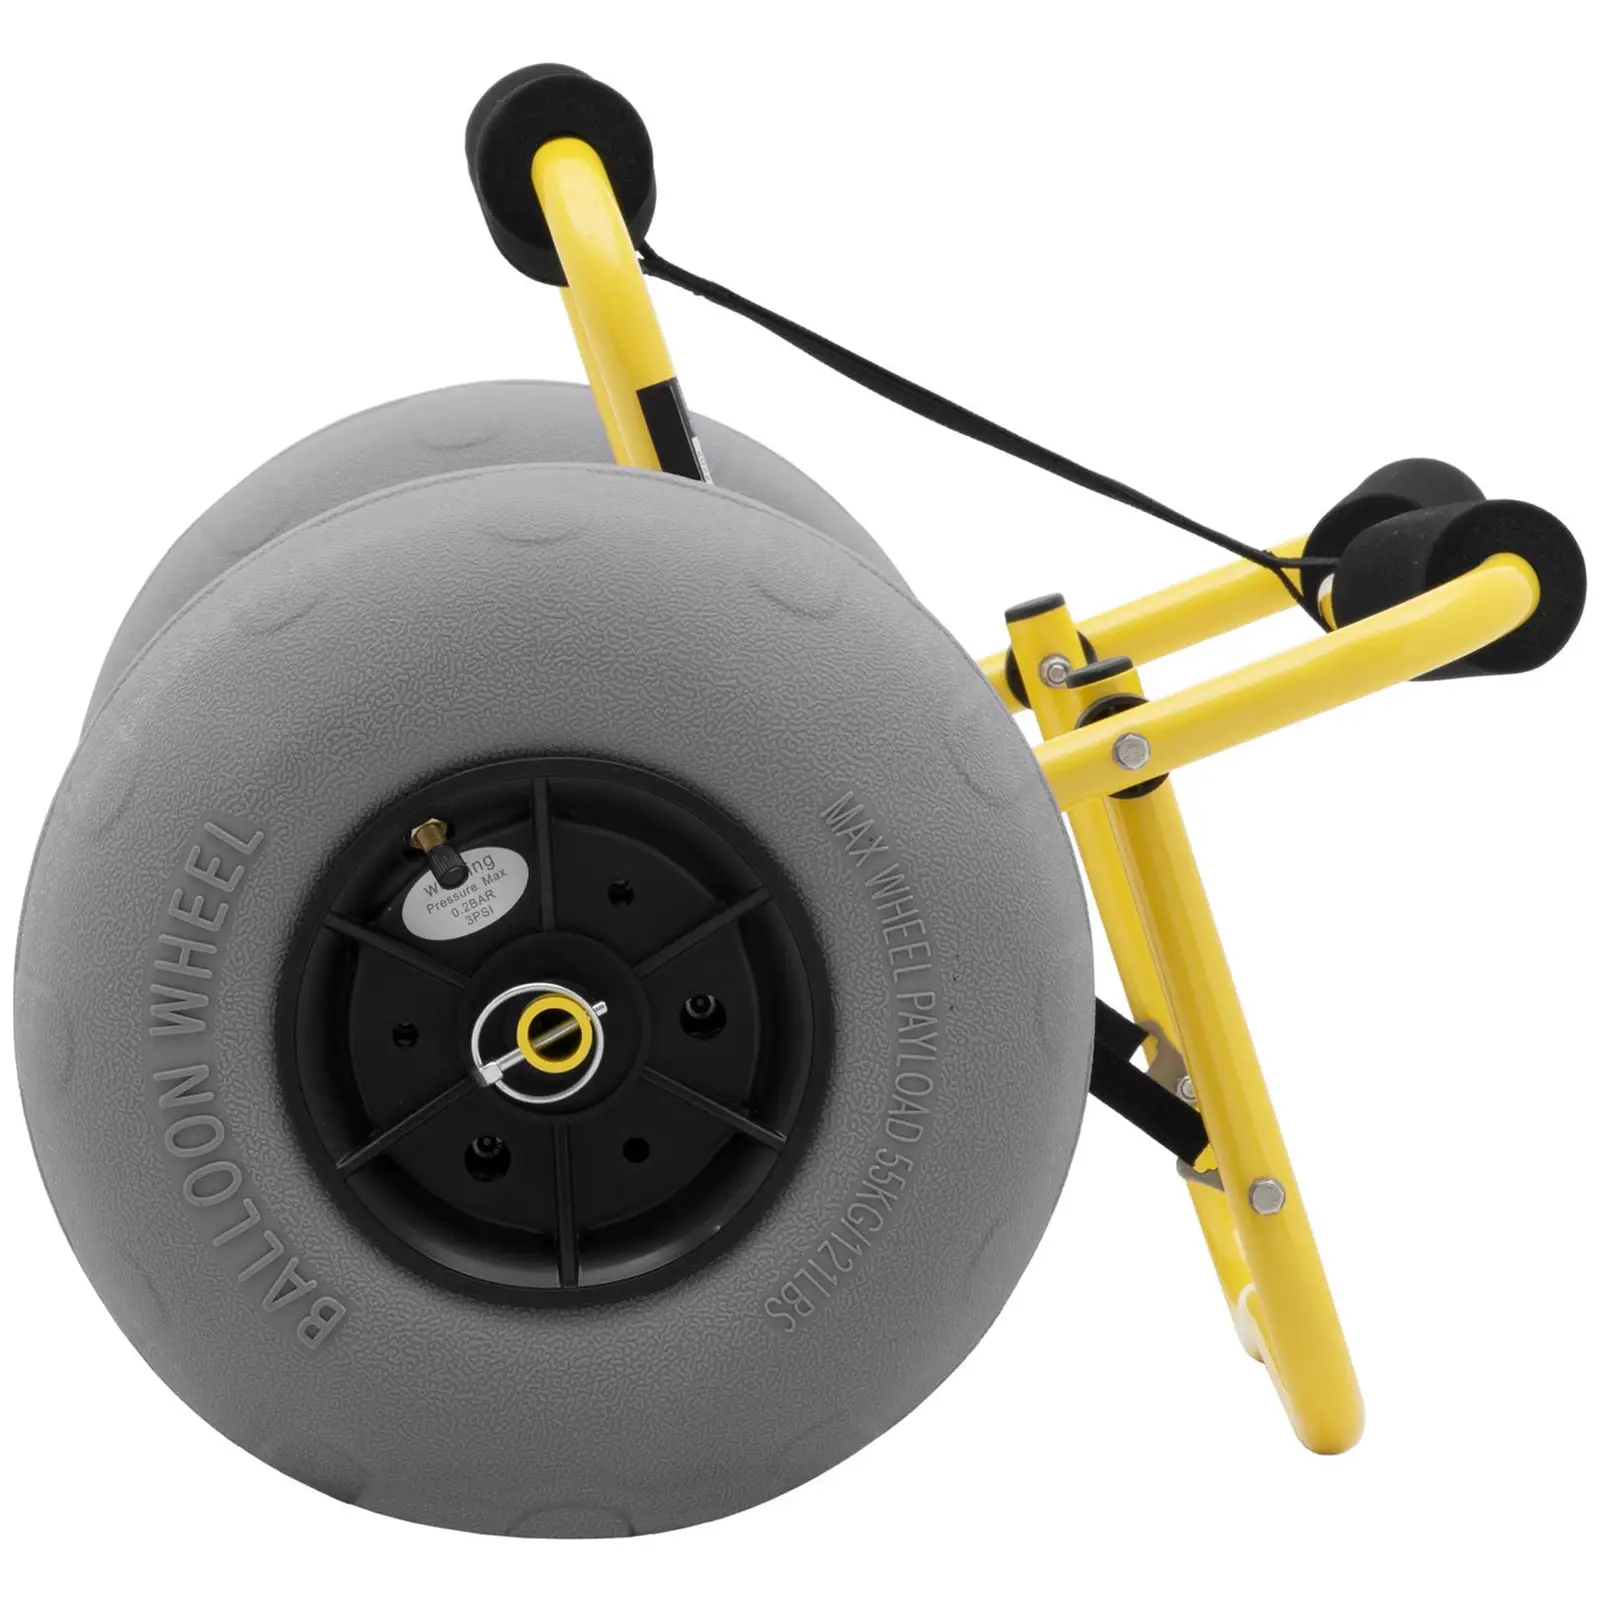 Carrello kayak - Pieghevole - Con ruote sferiche - 75 kg